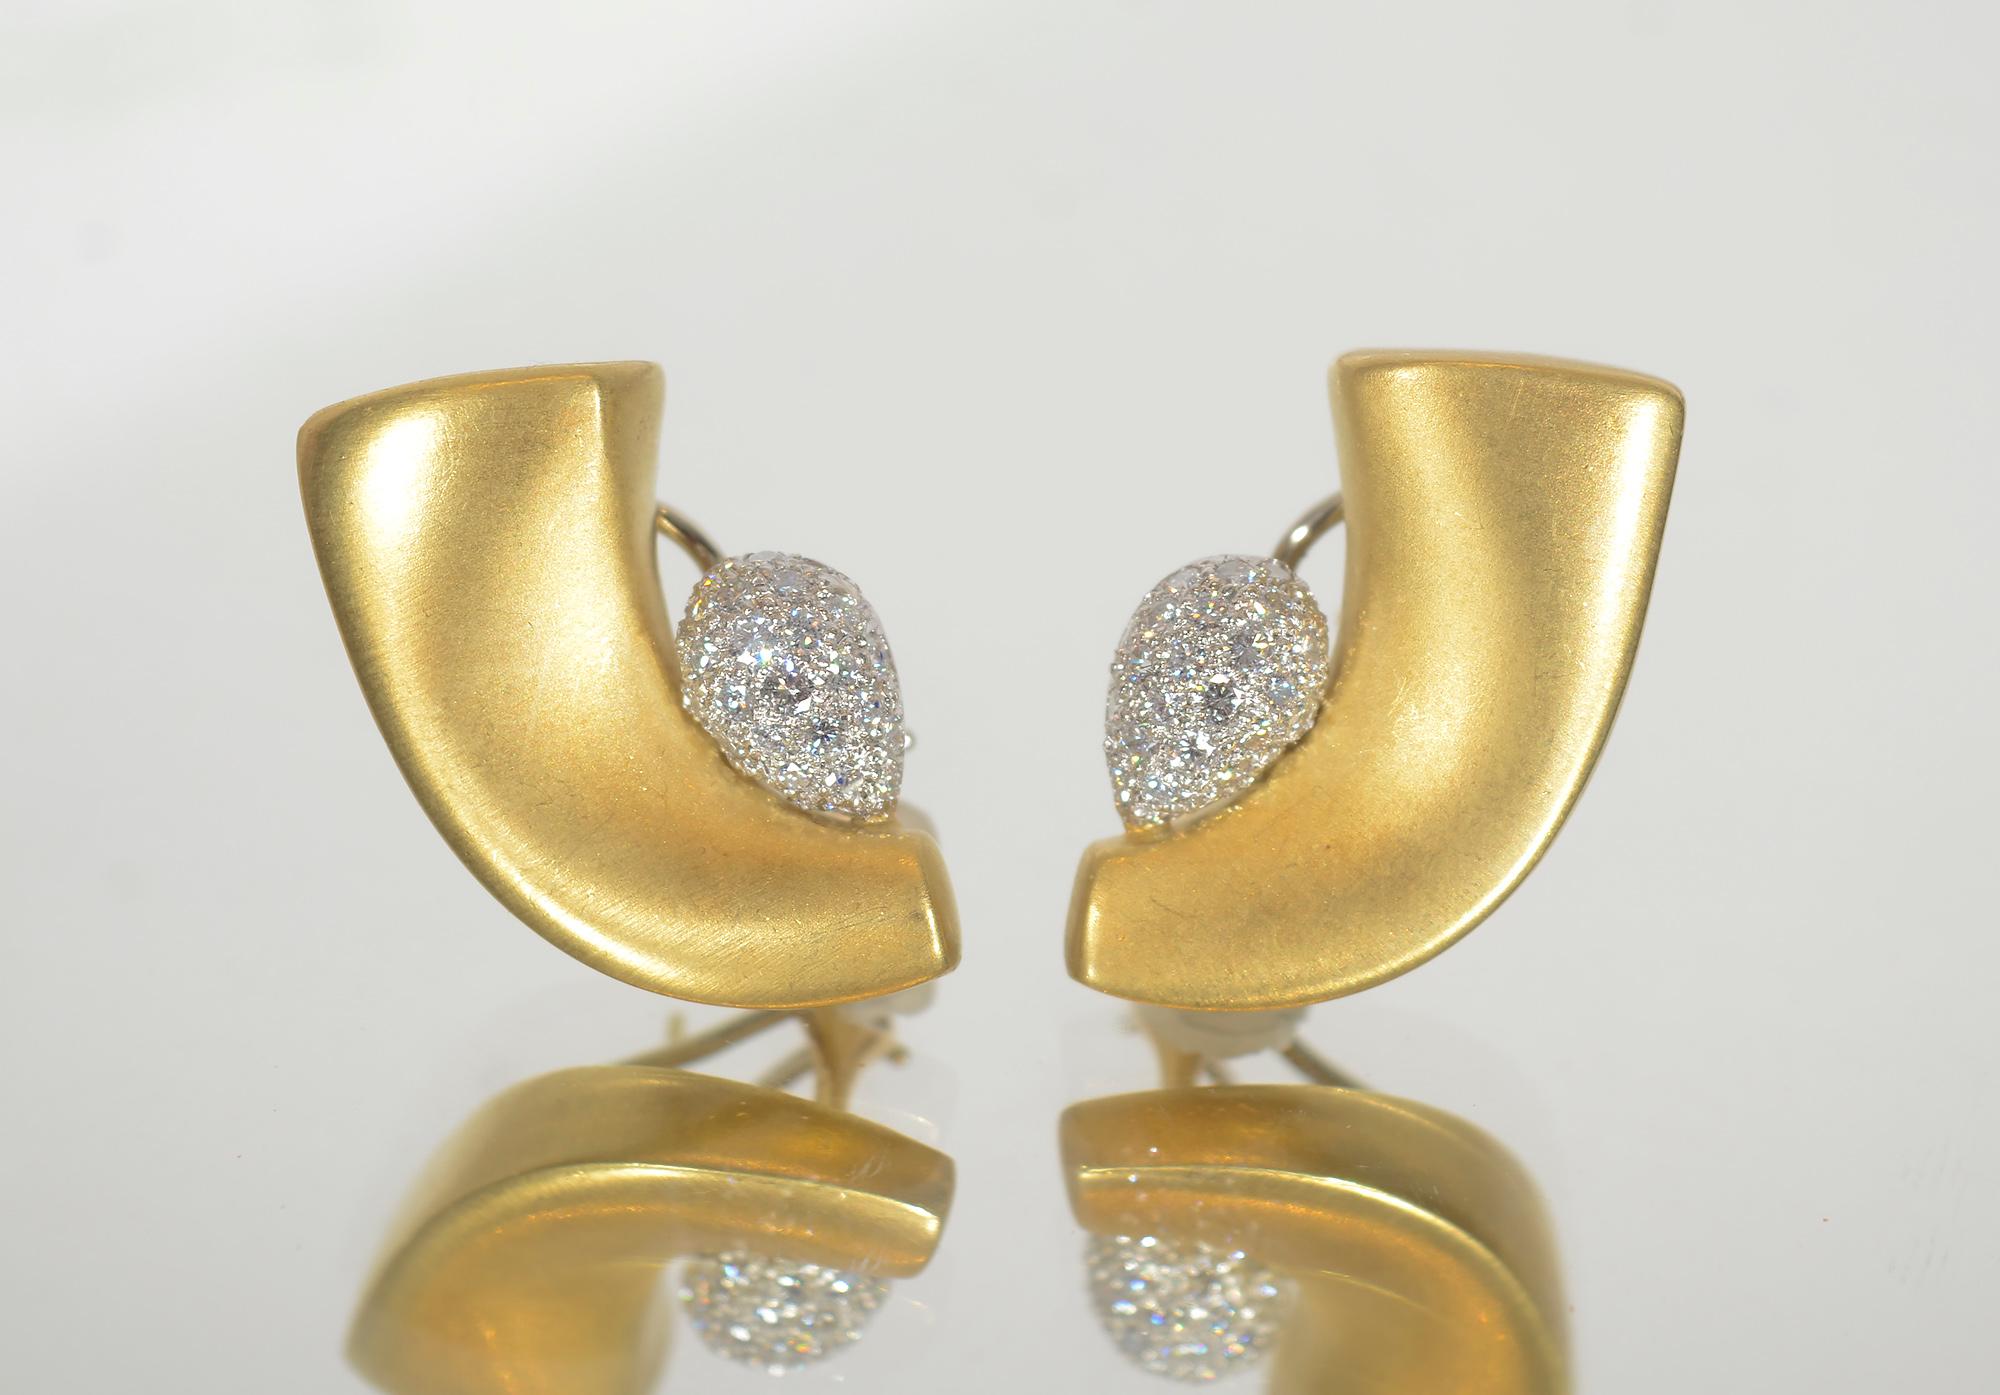 Boucles d'oreilles or 18 carats en forme de croissant  avec une douce finition brunie par la créatrice contemporaine Marlene Stowe.  À l'intérieur du croissant se trouve une grappe de diamants pavés en forme de poire. Les boucles d'oreilles mesurent